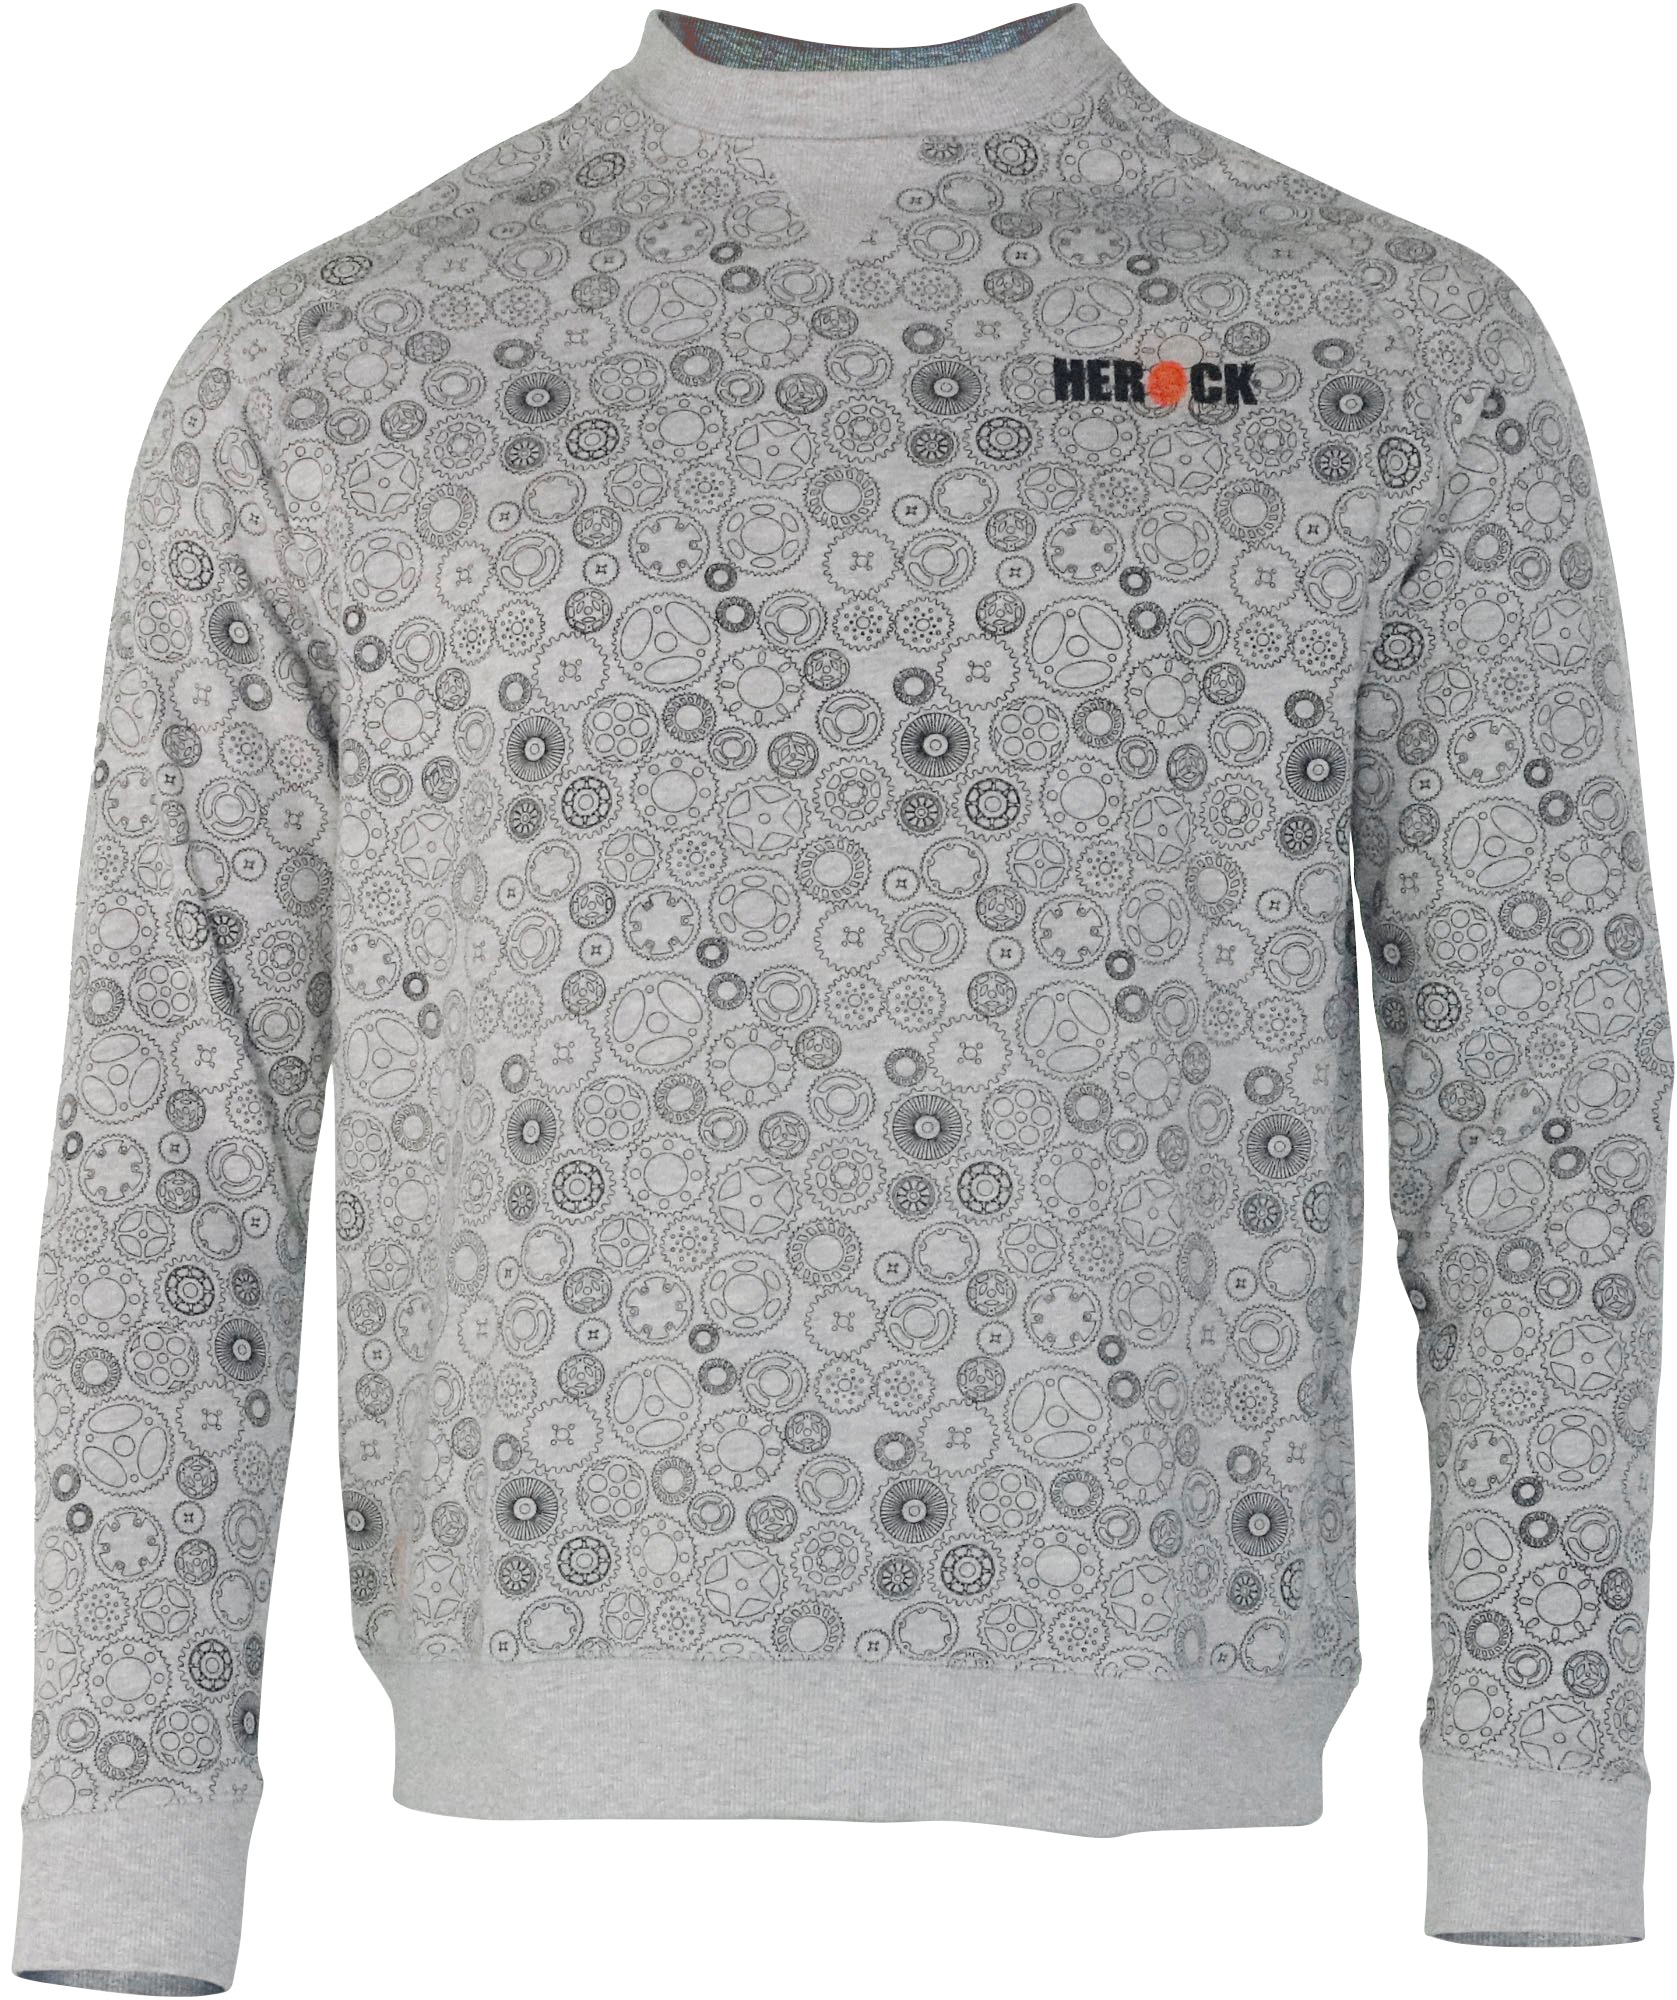 Mit Herock®-Aufdruck, BAUR bestellen Herock & | Tragegefühl Sweater »Engineer«, Zahnrad-Muster angenehmes